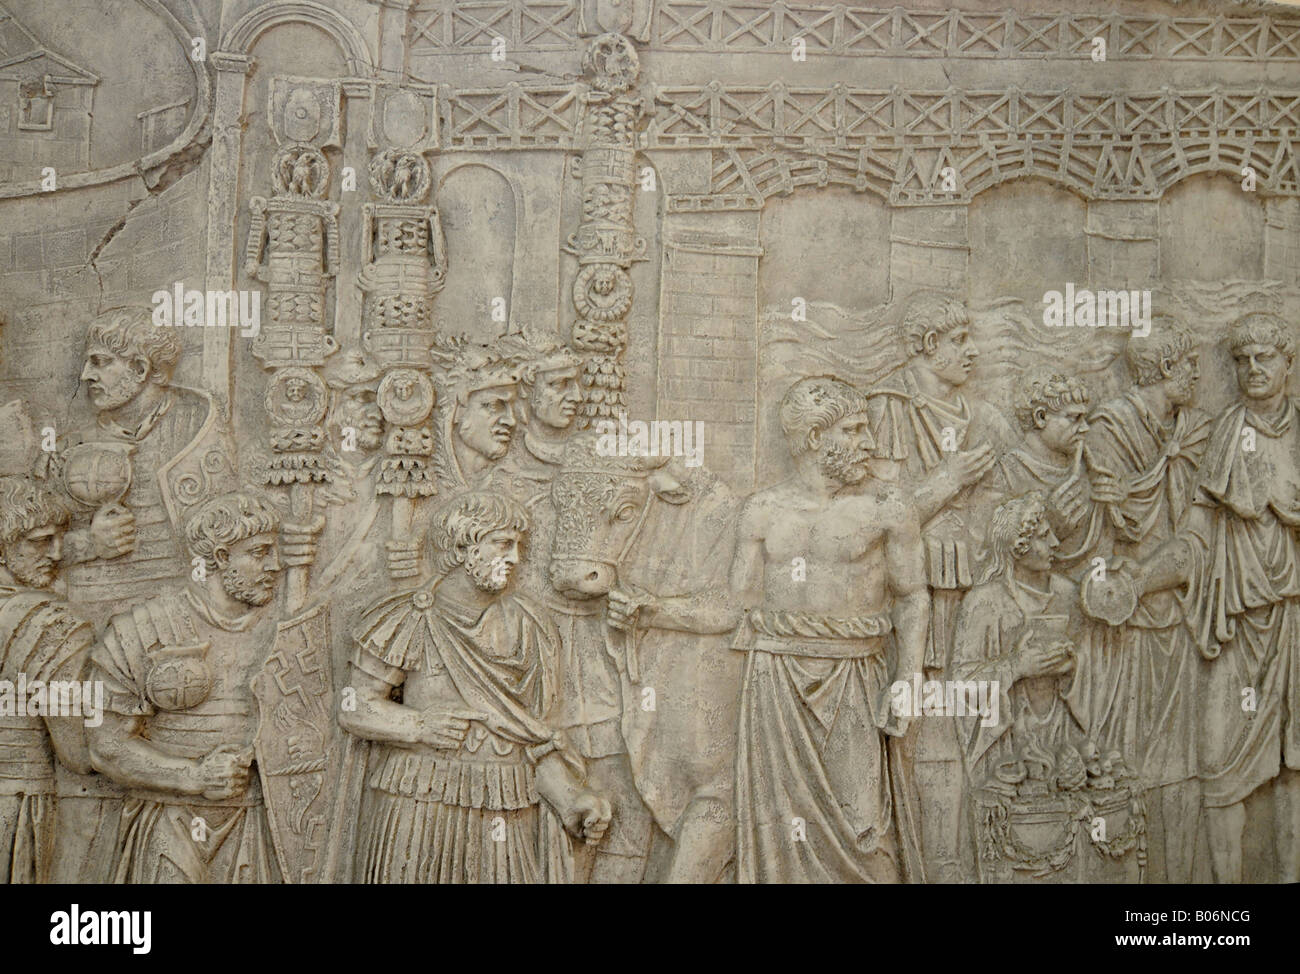 Un bas-relief sur l'affichage dans le musée national de Damas, Syrie. Banque D'Images